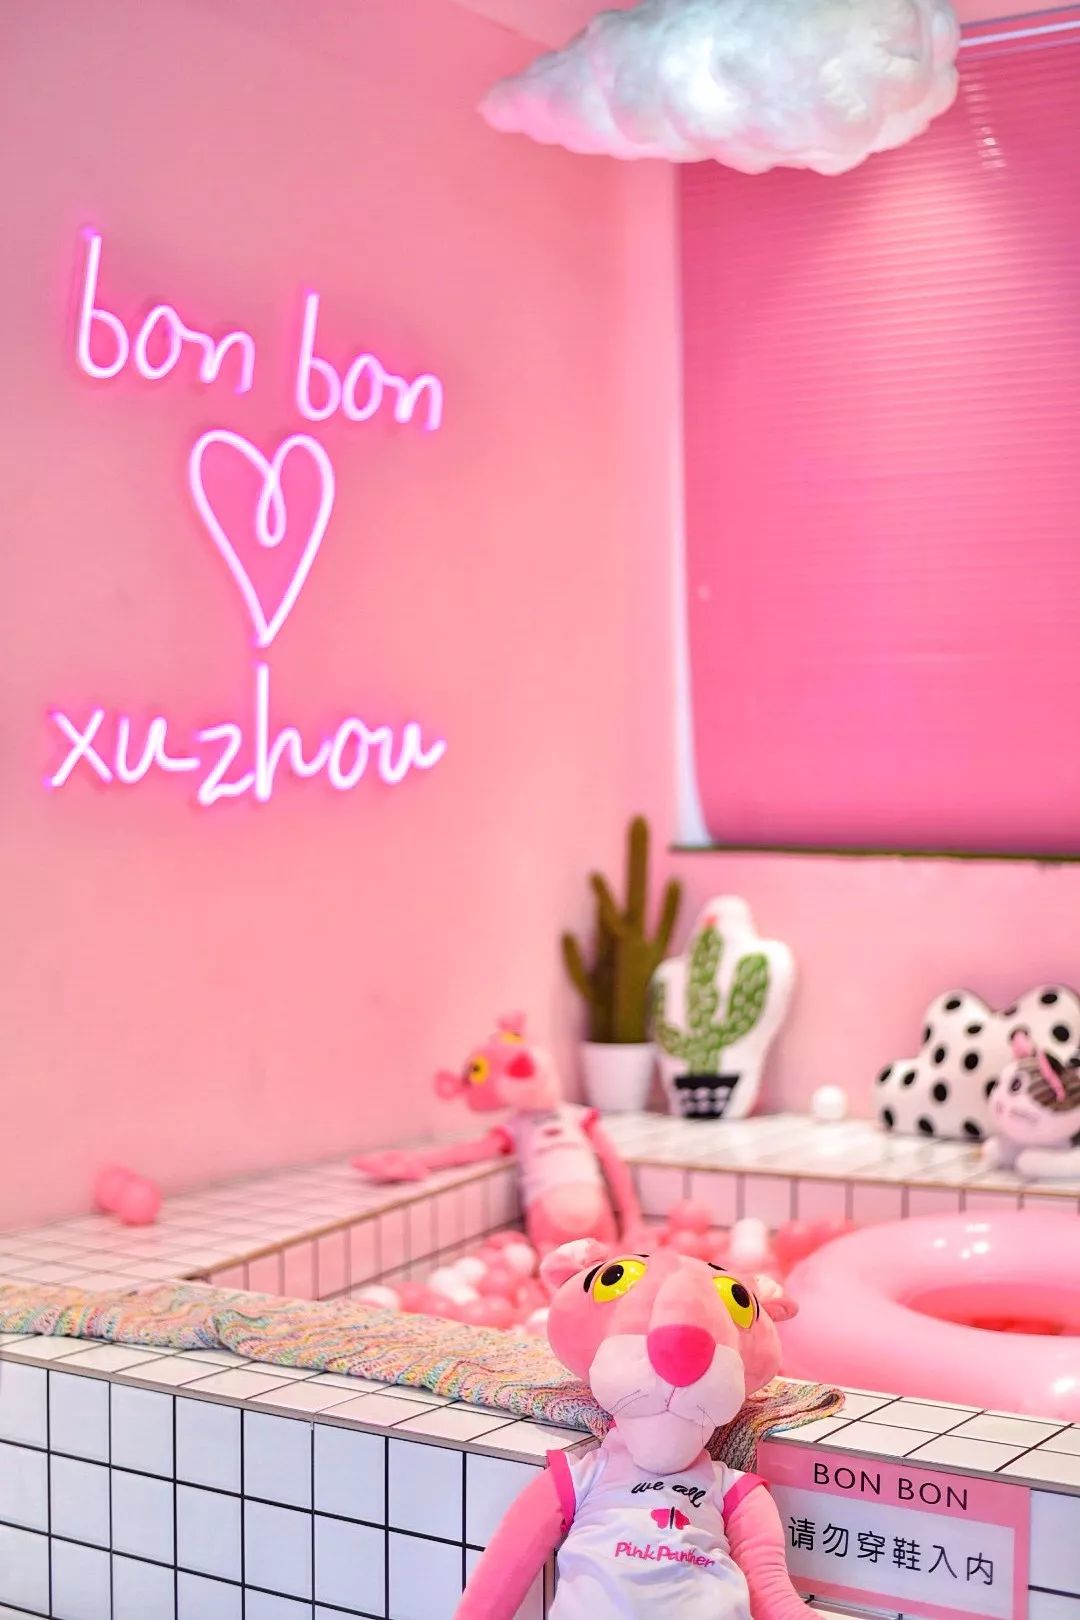 潮爆ins的粉色甜品店来徐州啦!一大片粉红豹、